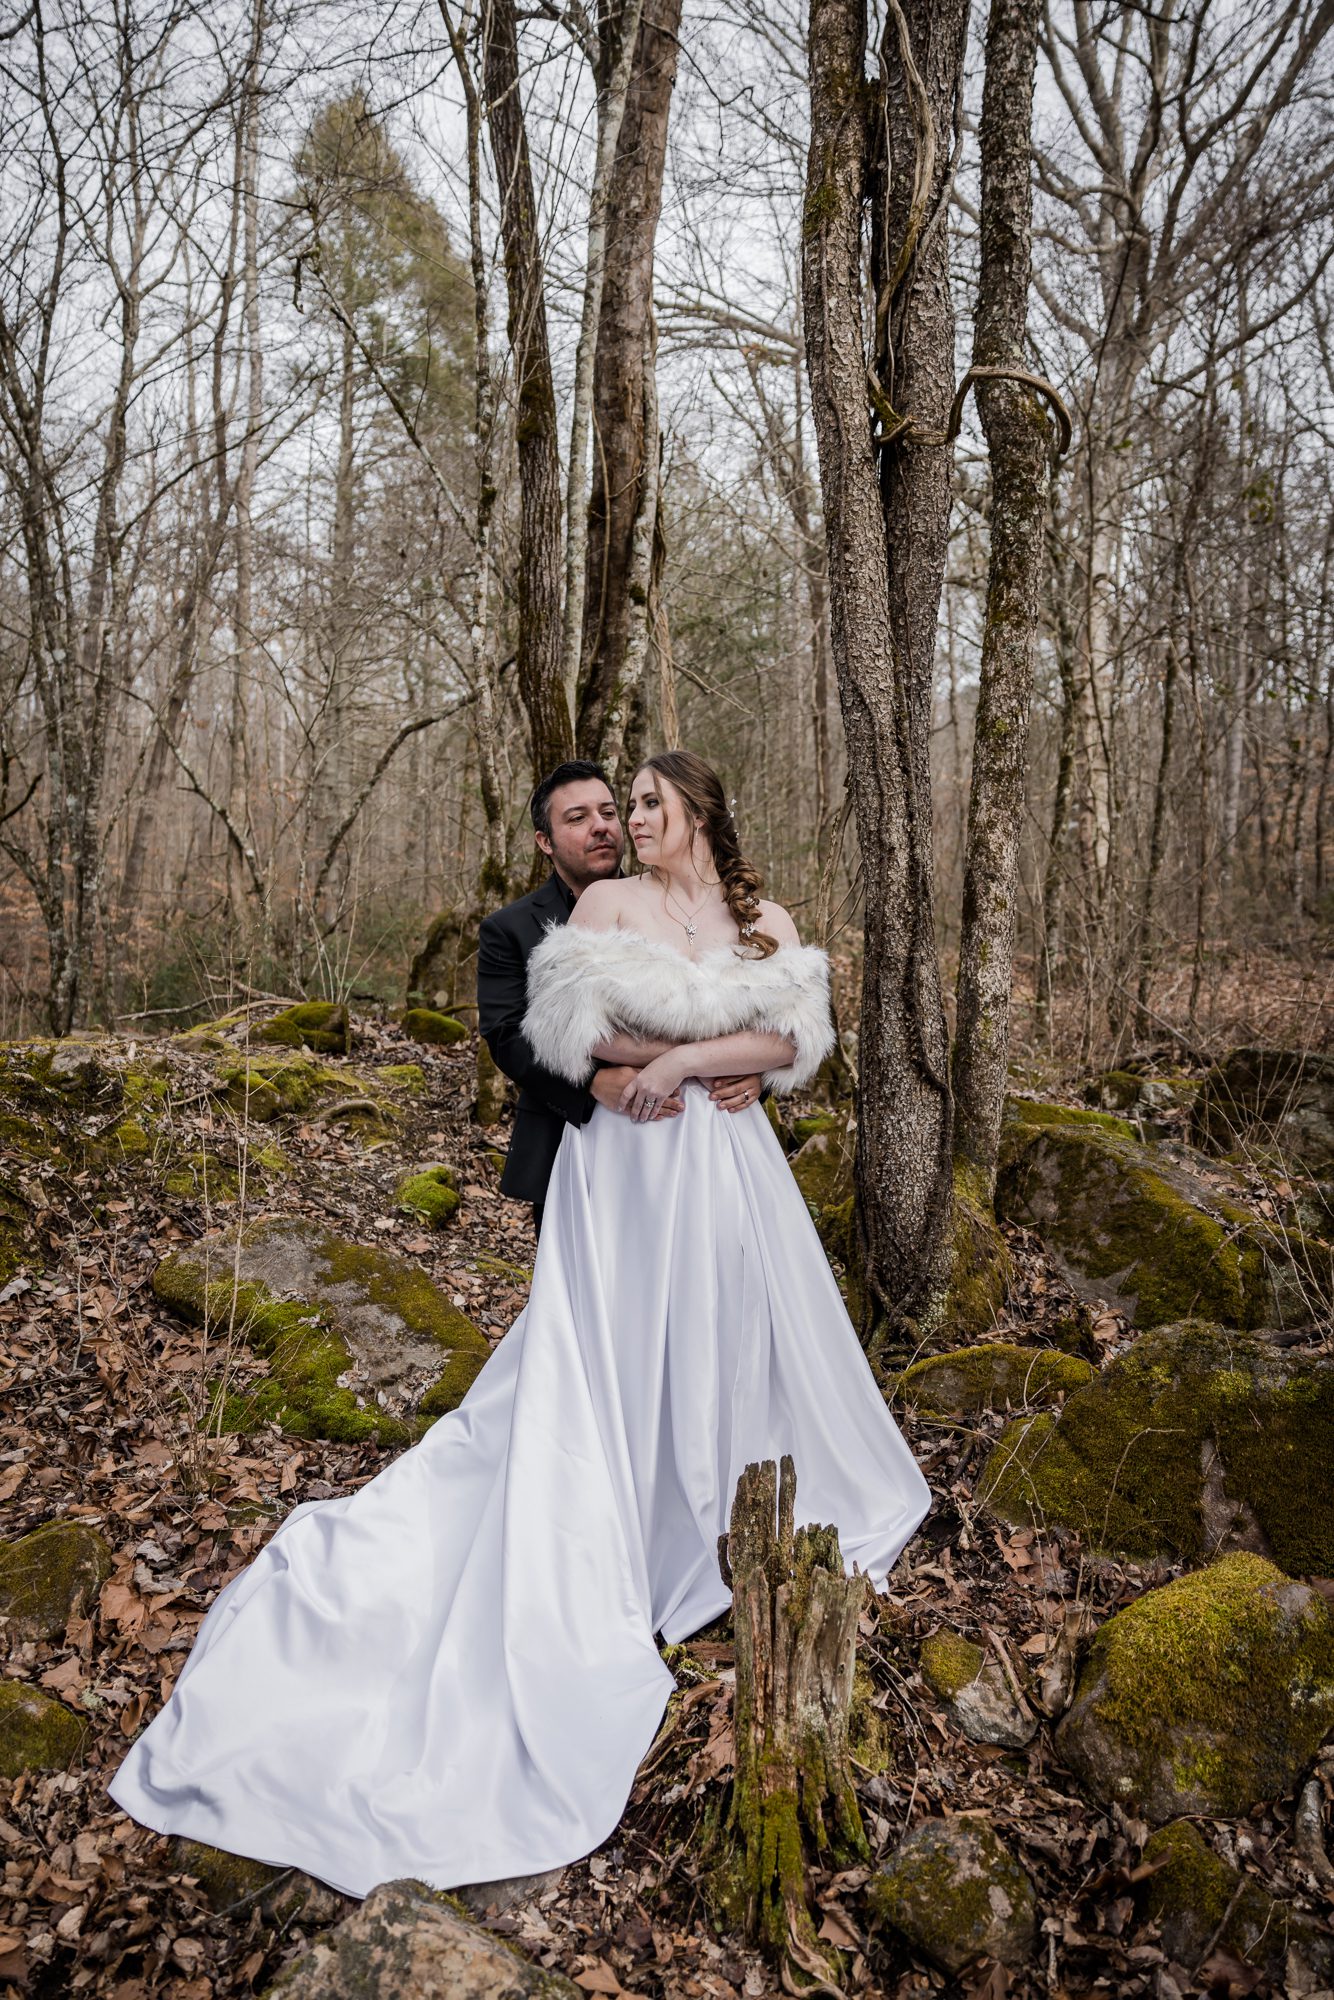 Outdoor Bride and Groom Portrait